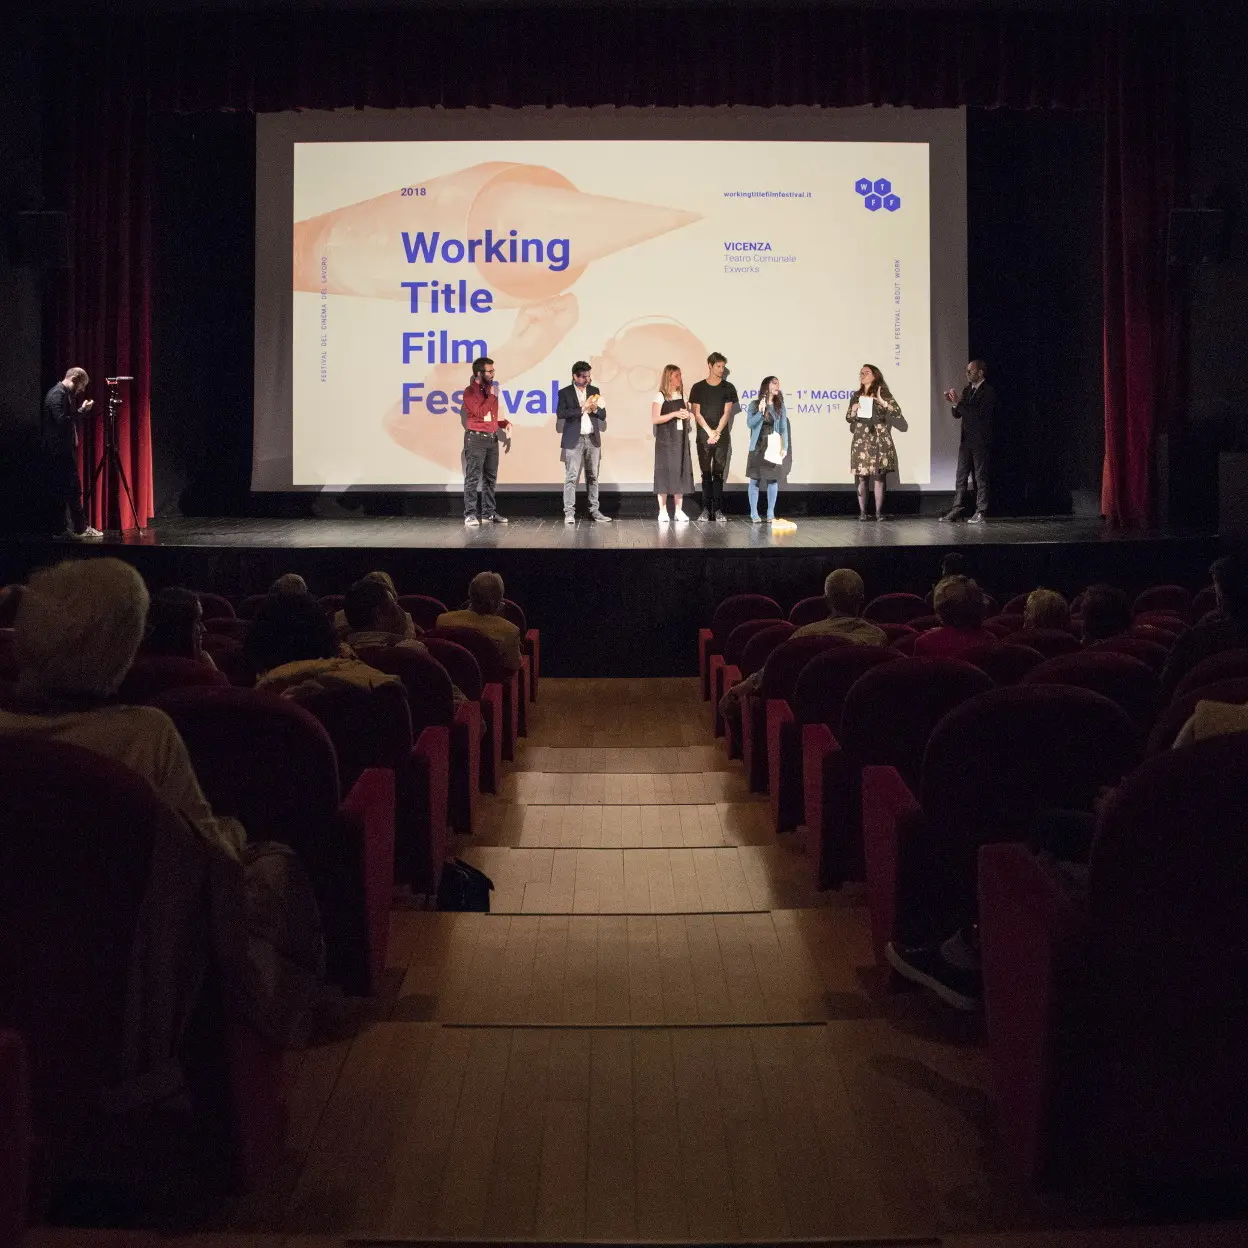 Working Title Film Festival, il lavoro sul grande schermo